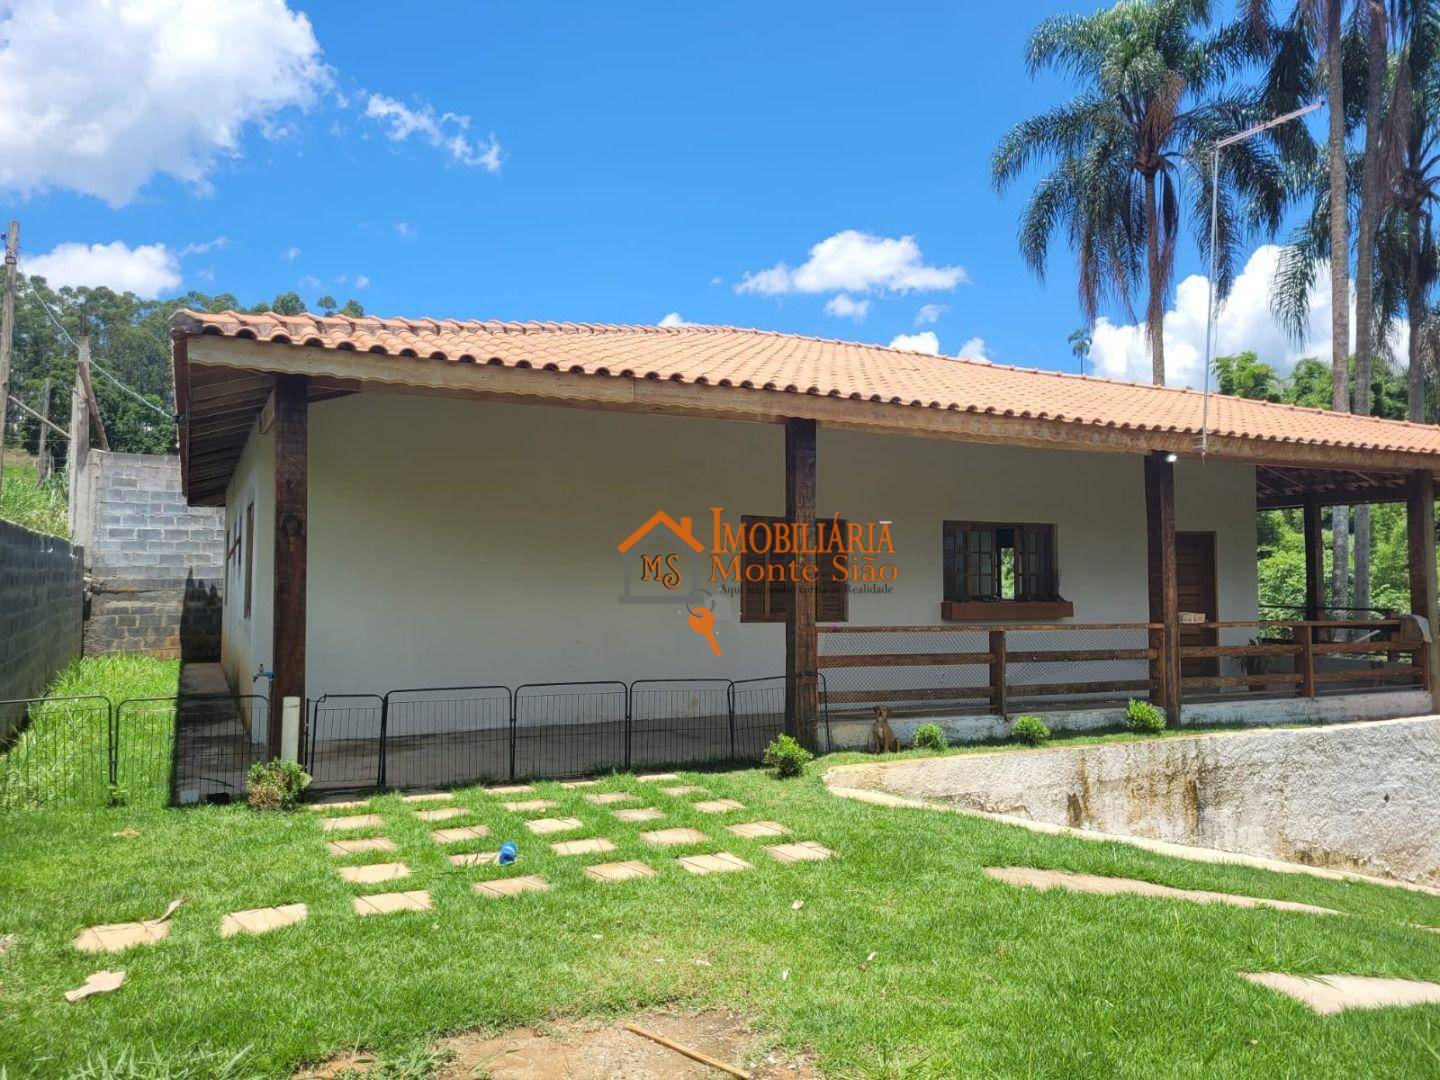 Chácara com 5 dormitórios à venda, 1150 m² por R$ 590.000,00 - Santa Isabel - Santa Isabel/SP